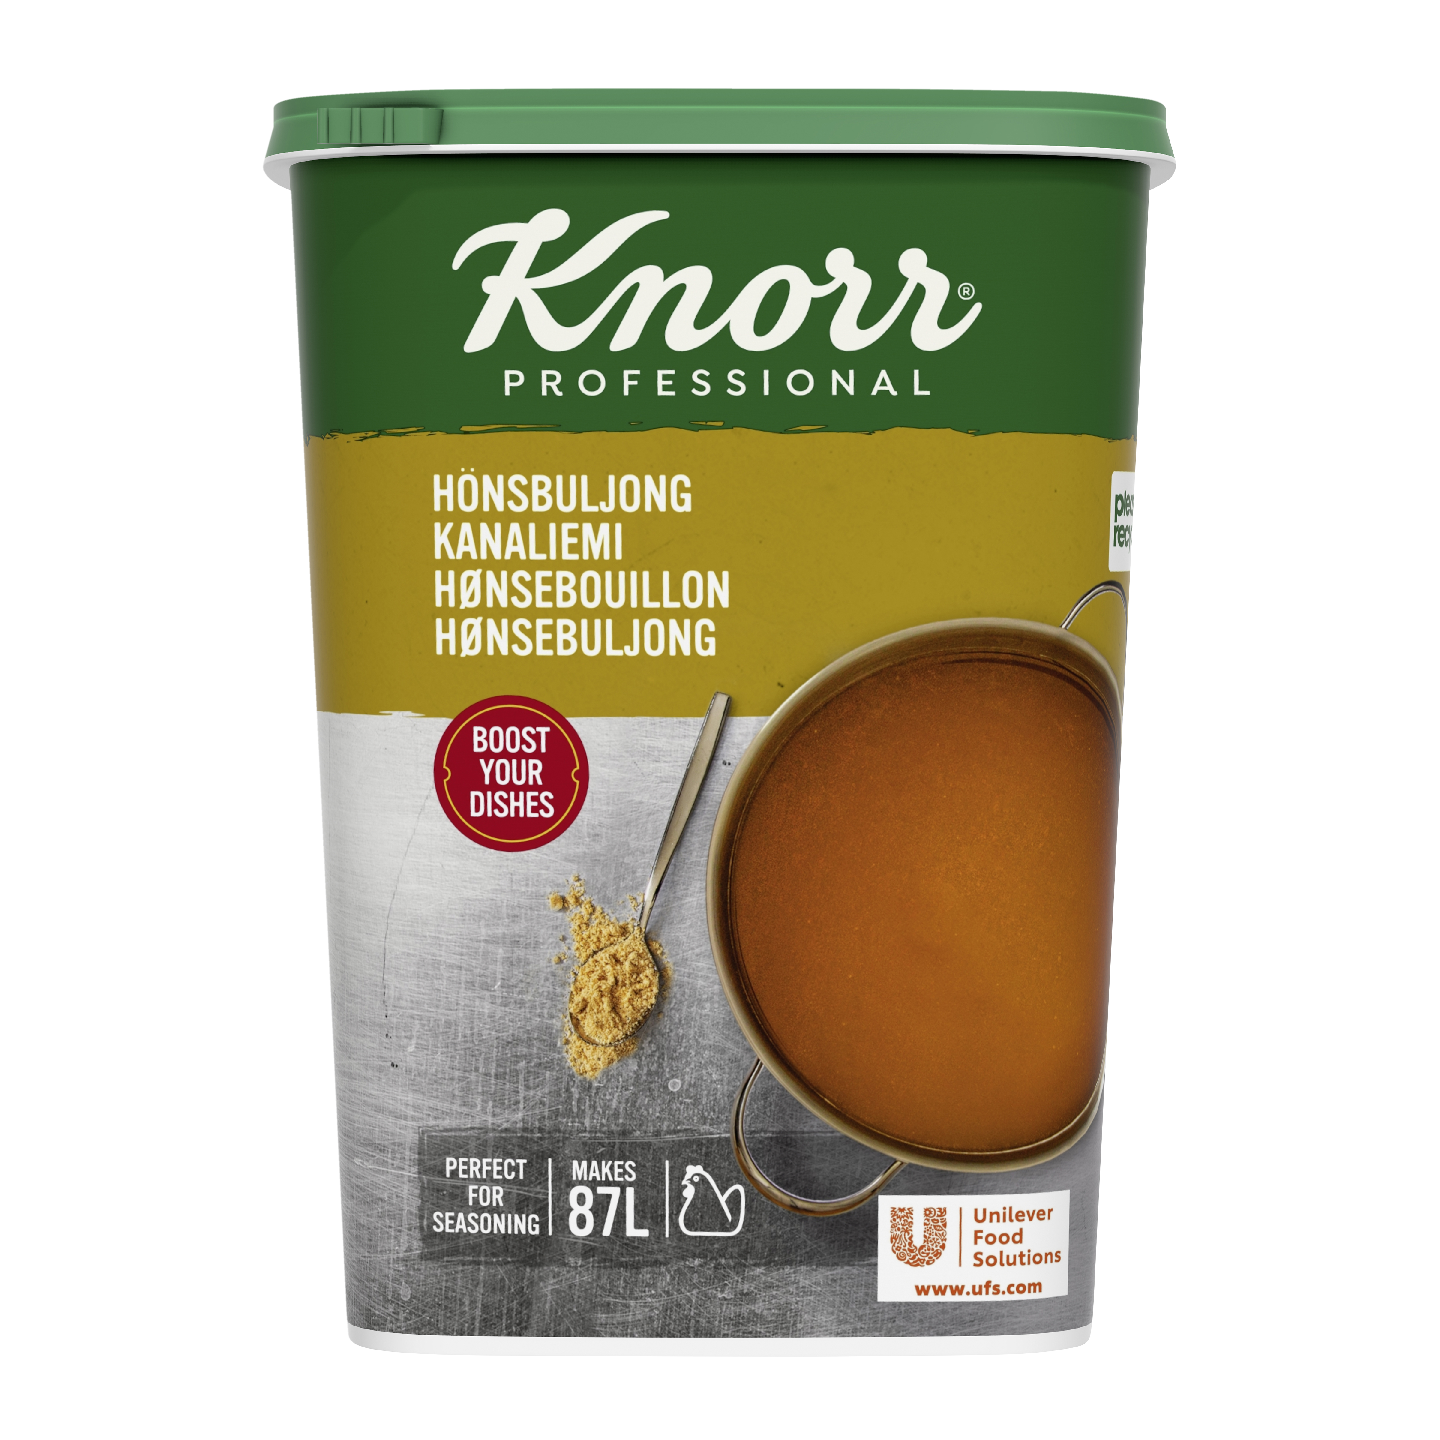 Knorr kanaliemi 1,3kg/87l